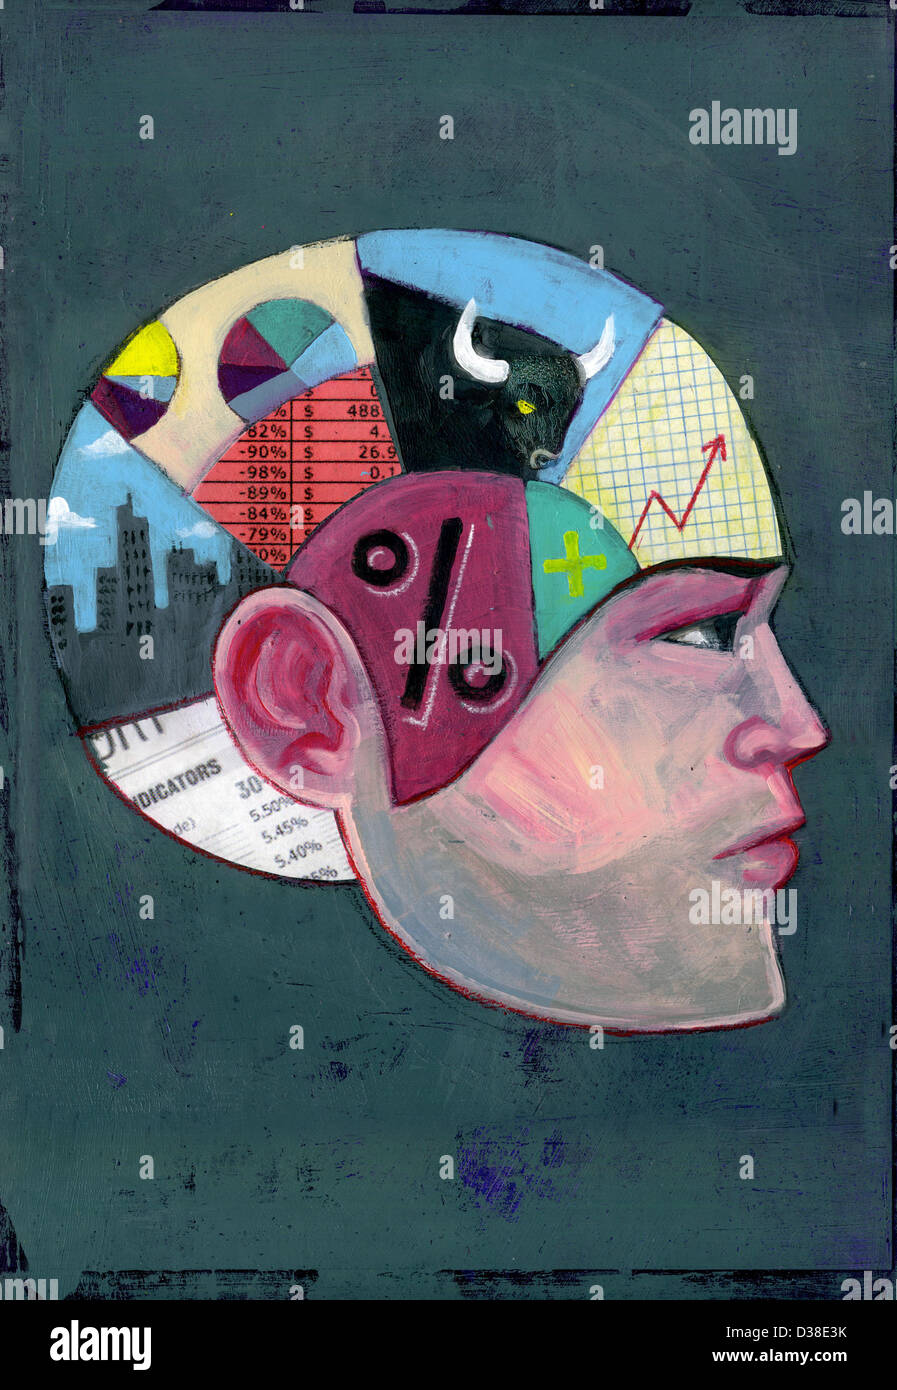 Imagen ilustrativa de hombre con mentalidad de dinero que representa el cerebro del pensamiento económico Foto de stock